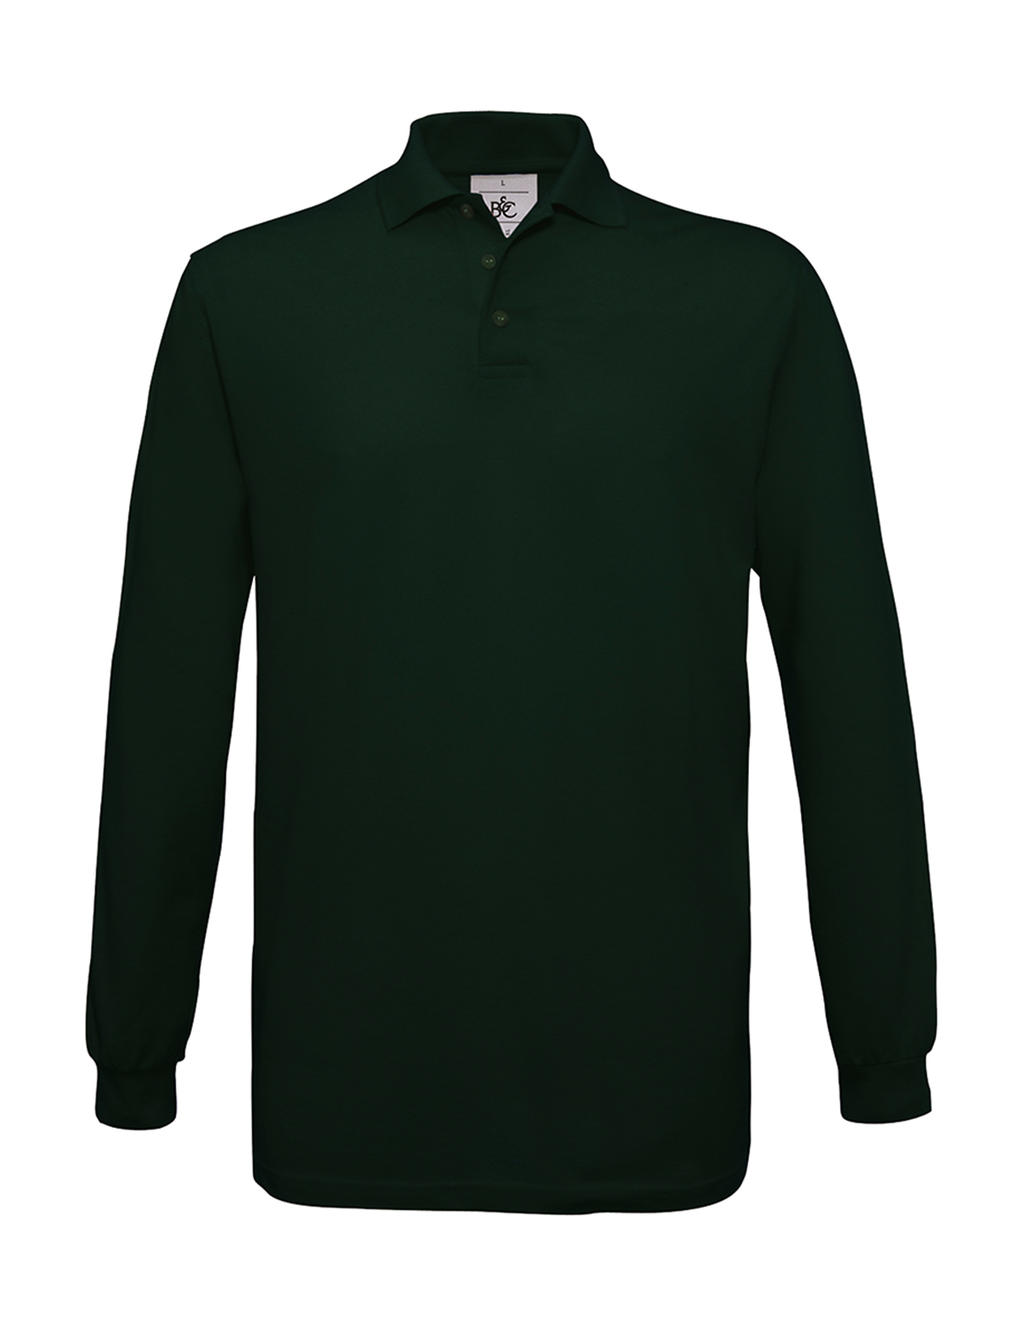 Pánské polo tričko B&C Safran s dlouhým rukávem - tmavě zelené, XXL